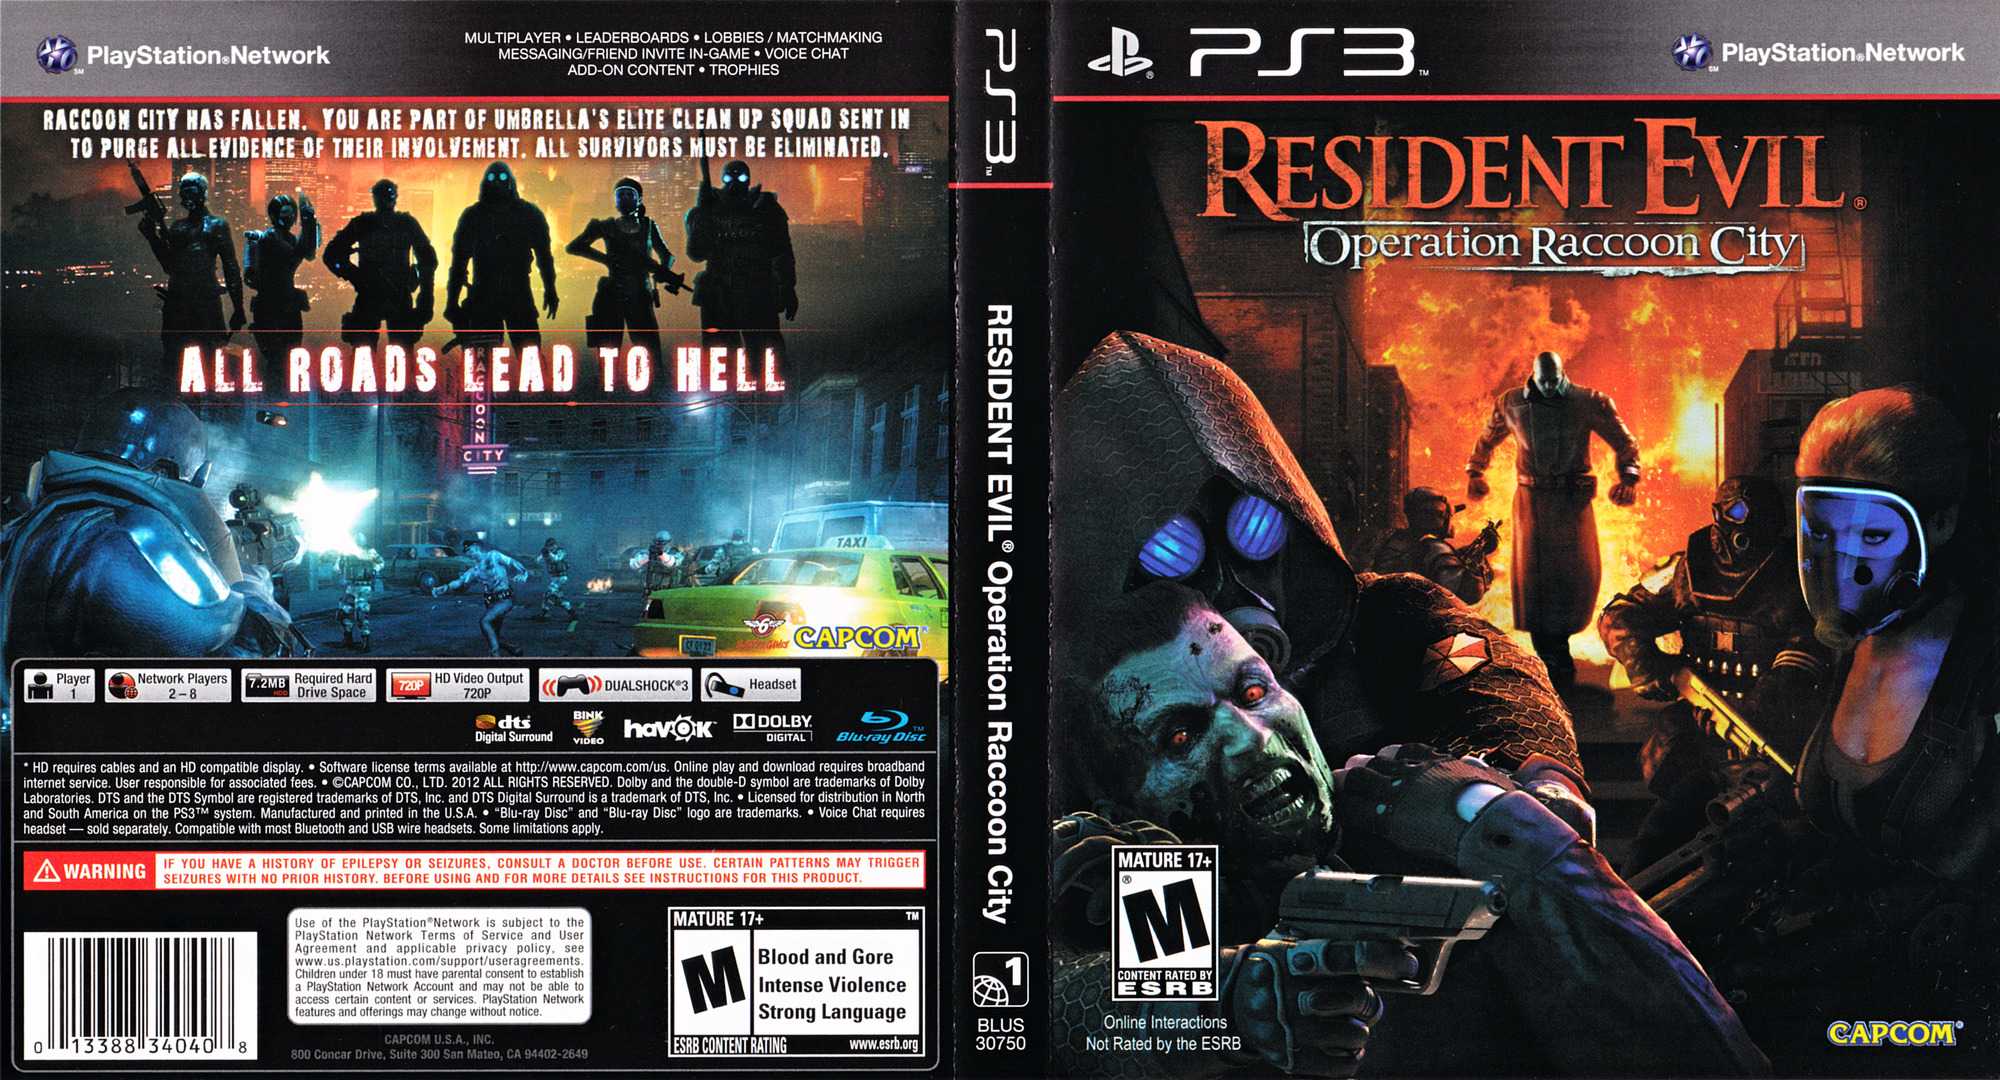 Resident evil все части серии игр в хронологическом порядке